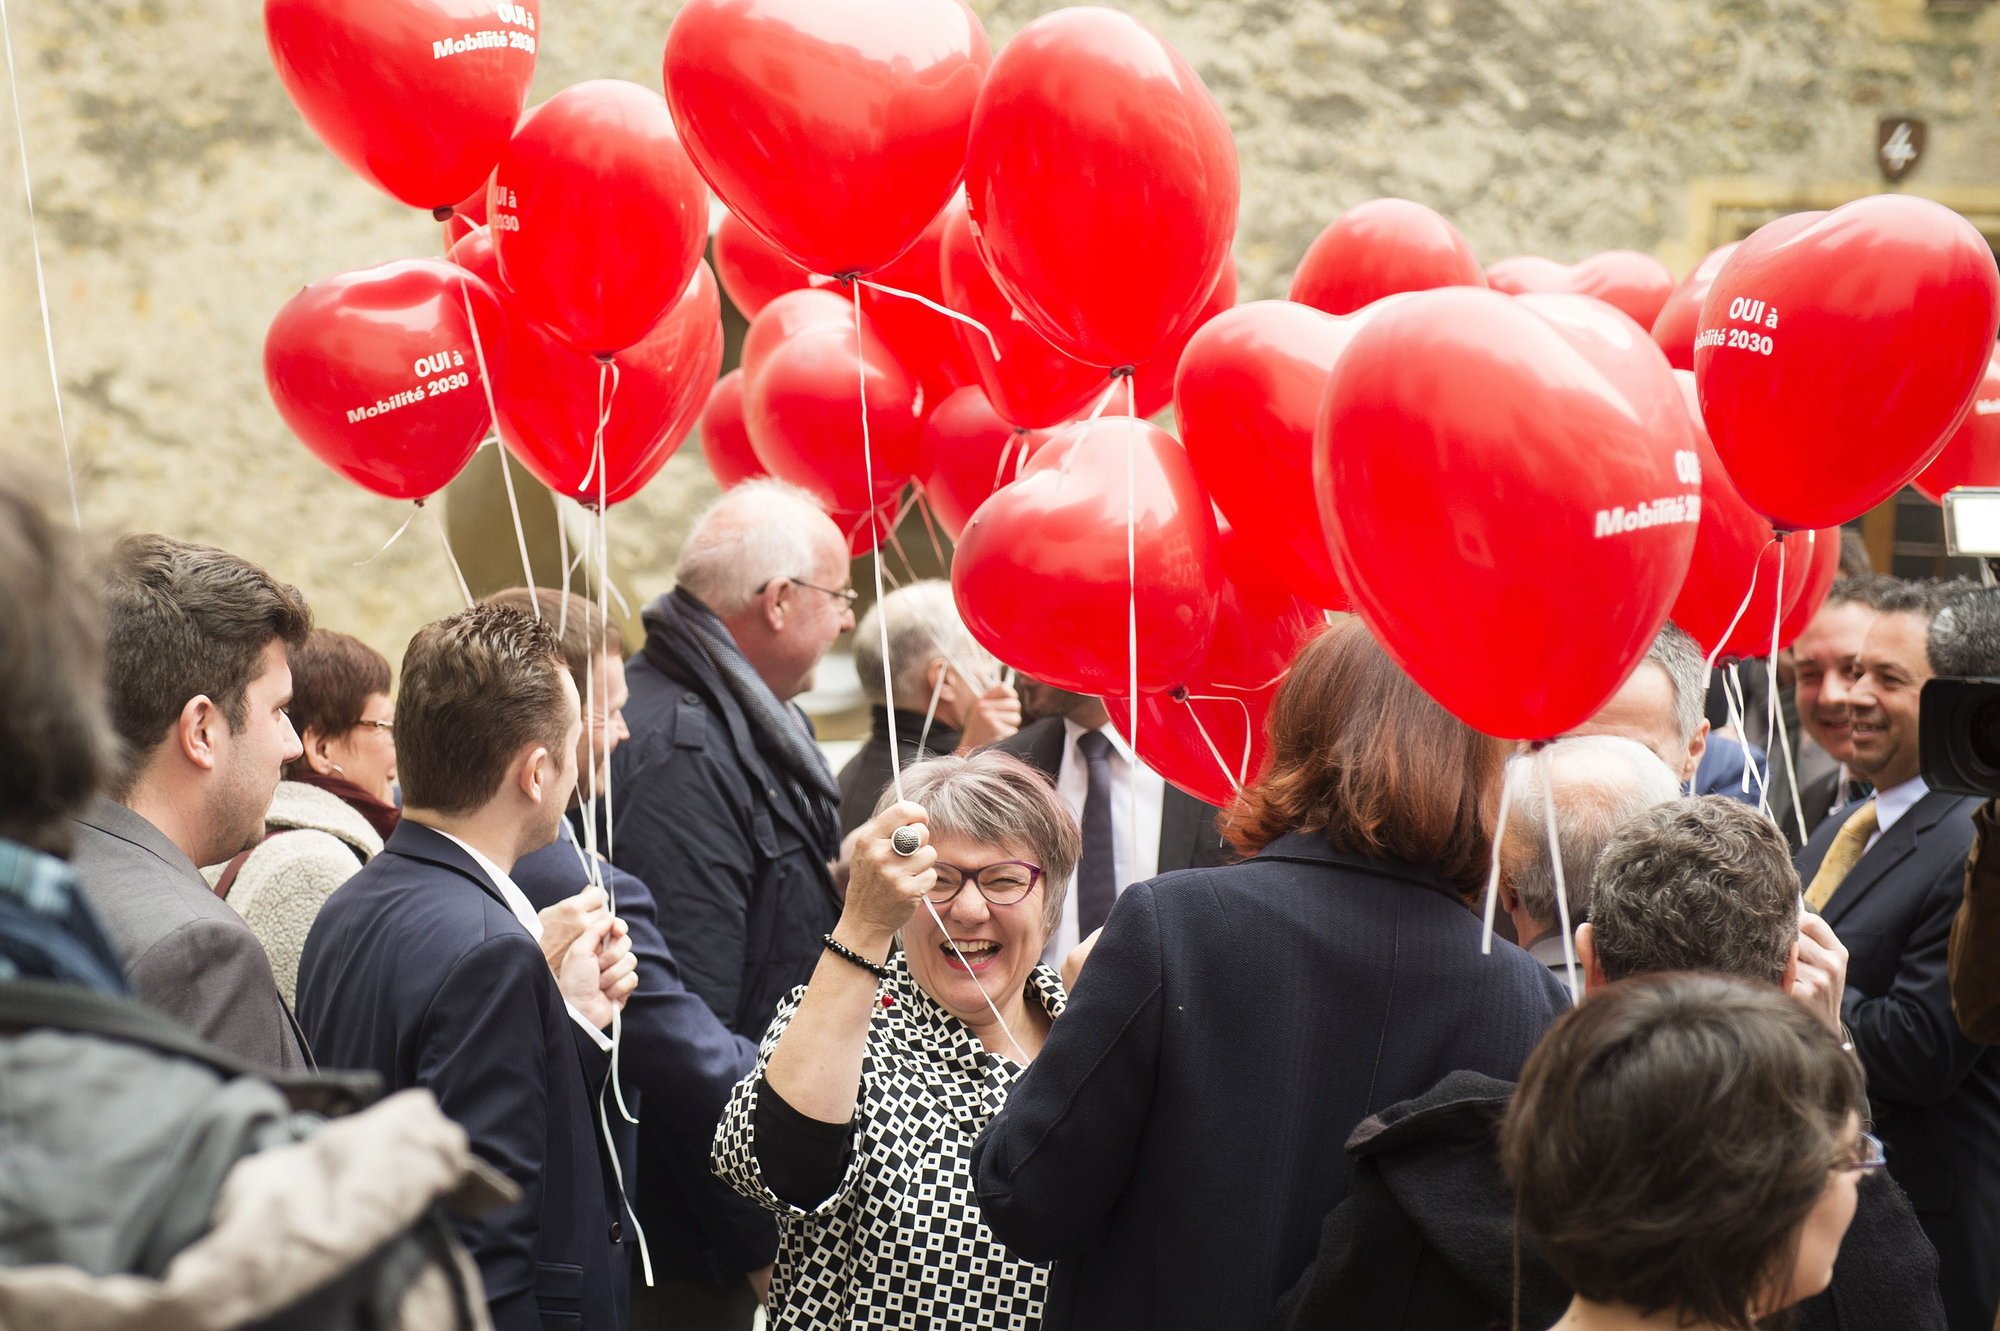 Monika Maire-Hefti tout sourire, en 2016, après le résultat de la votation sur le projet Mobilité 2030.